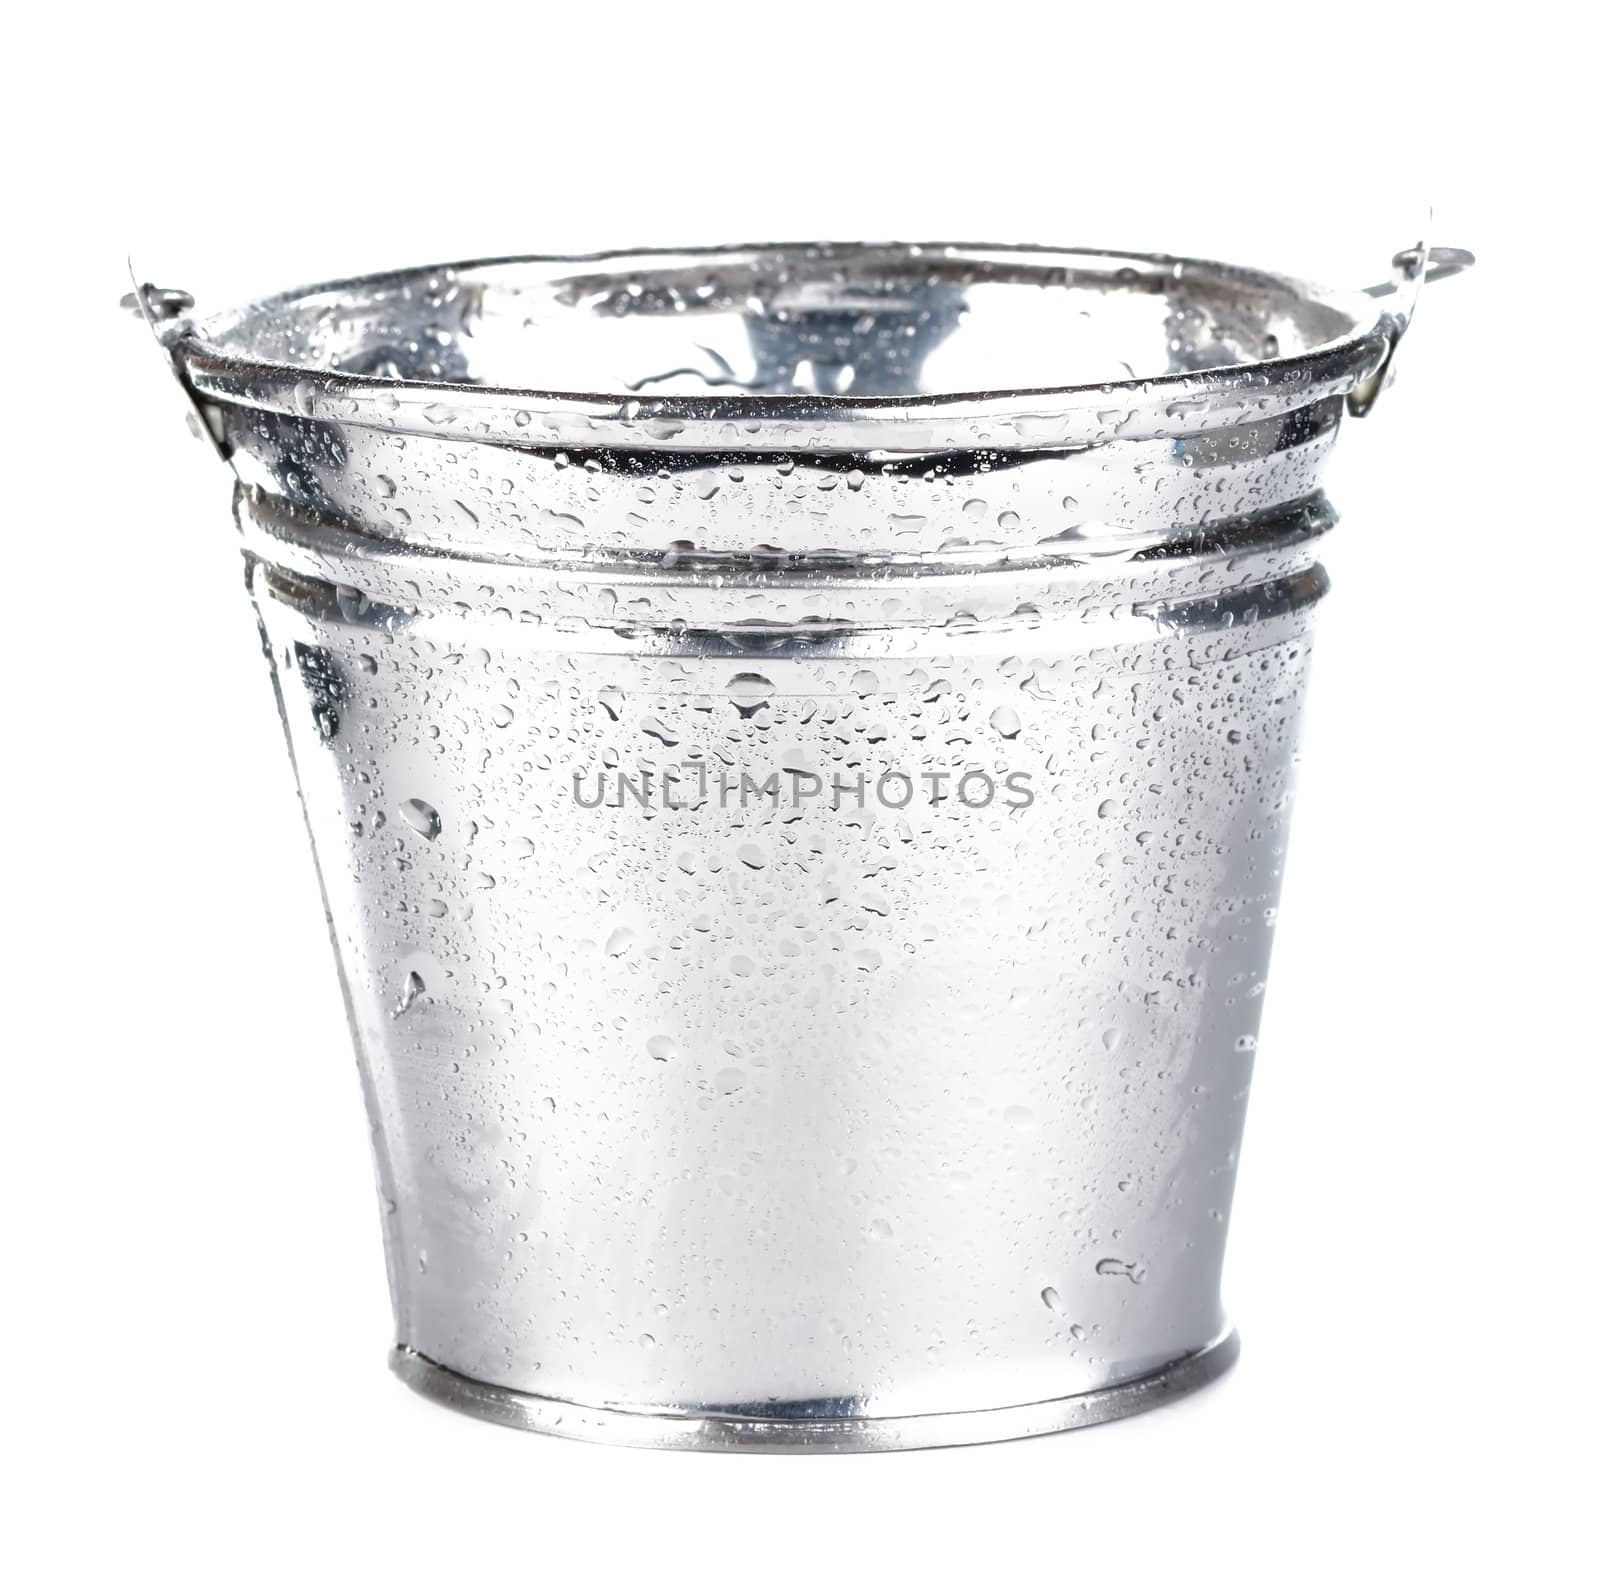 Metallic bucket isolated on white background